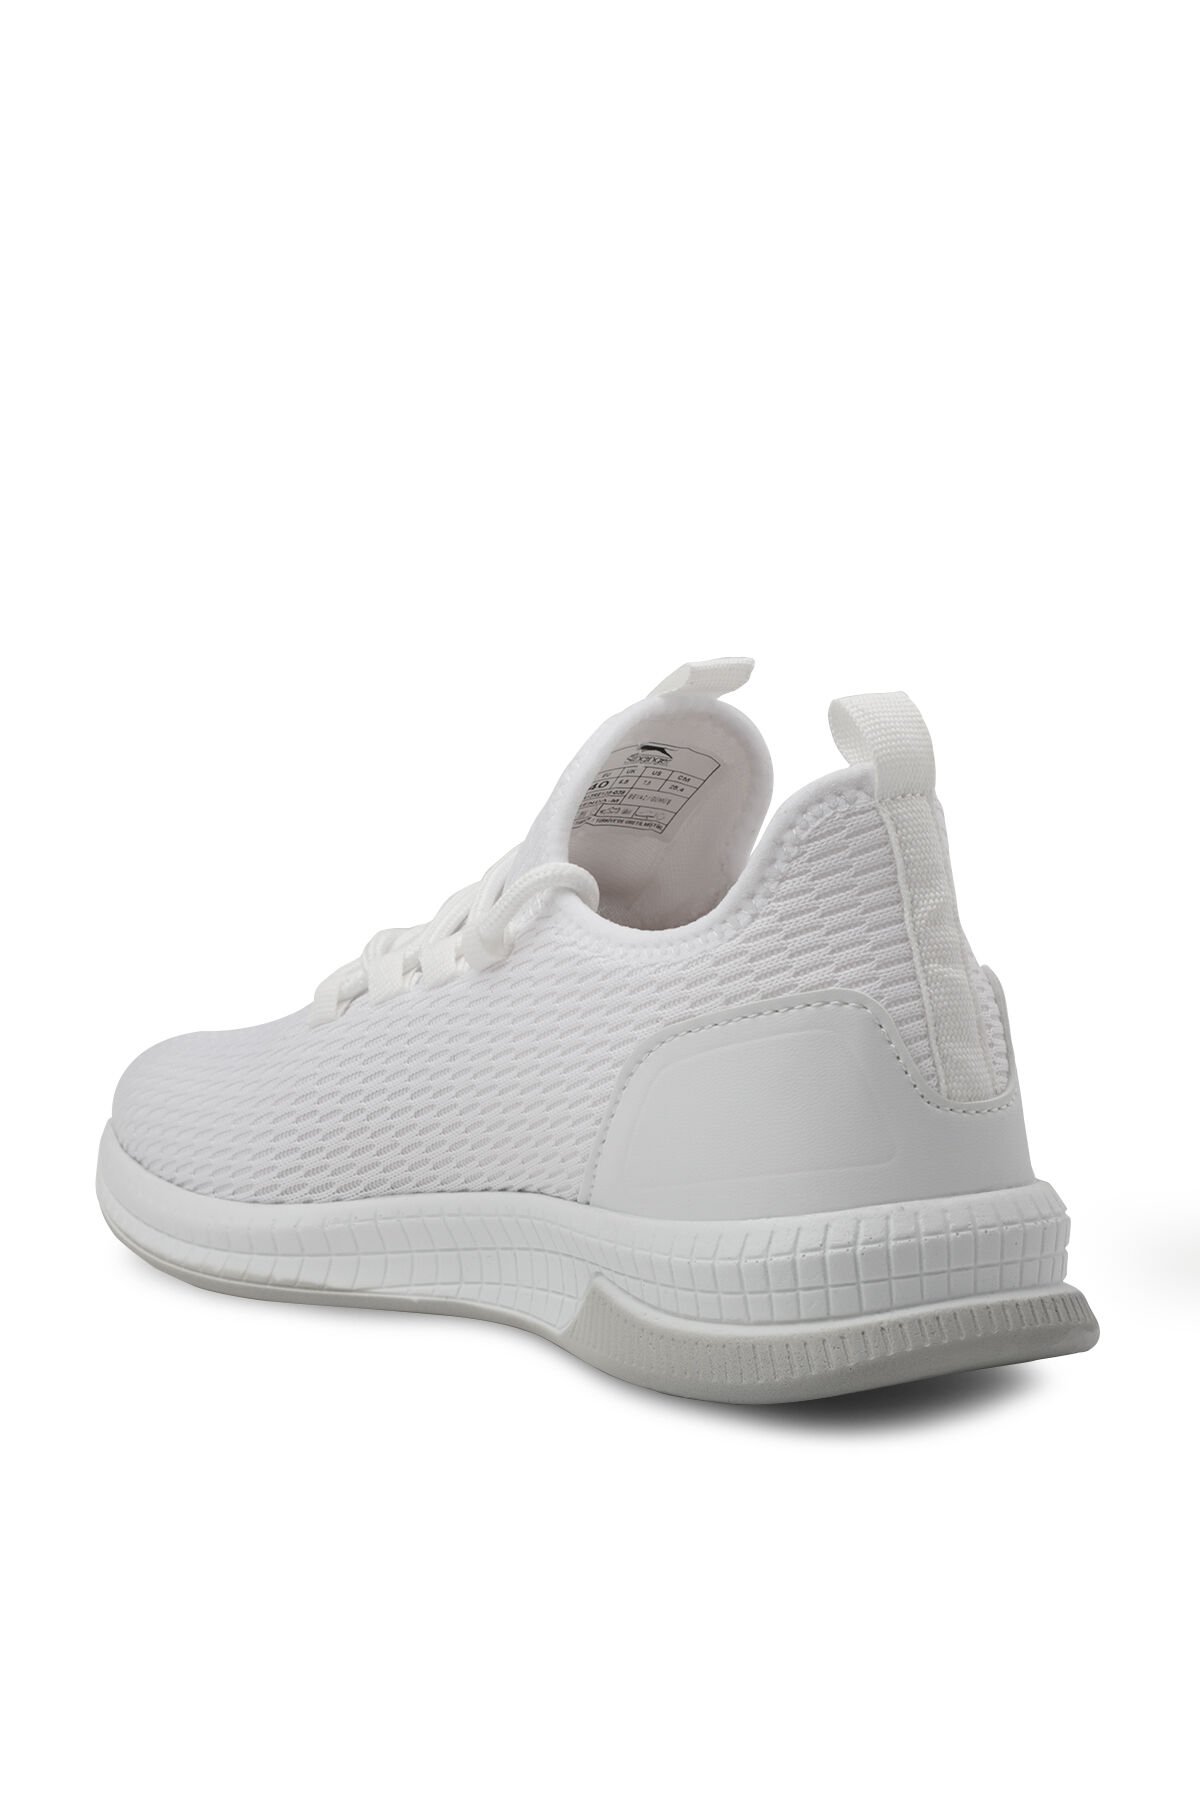 Slazenger AGENDA Sneaker Erkek Ayakkabı Beyaz / Gümüş - Thumbnail